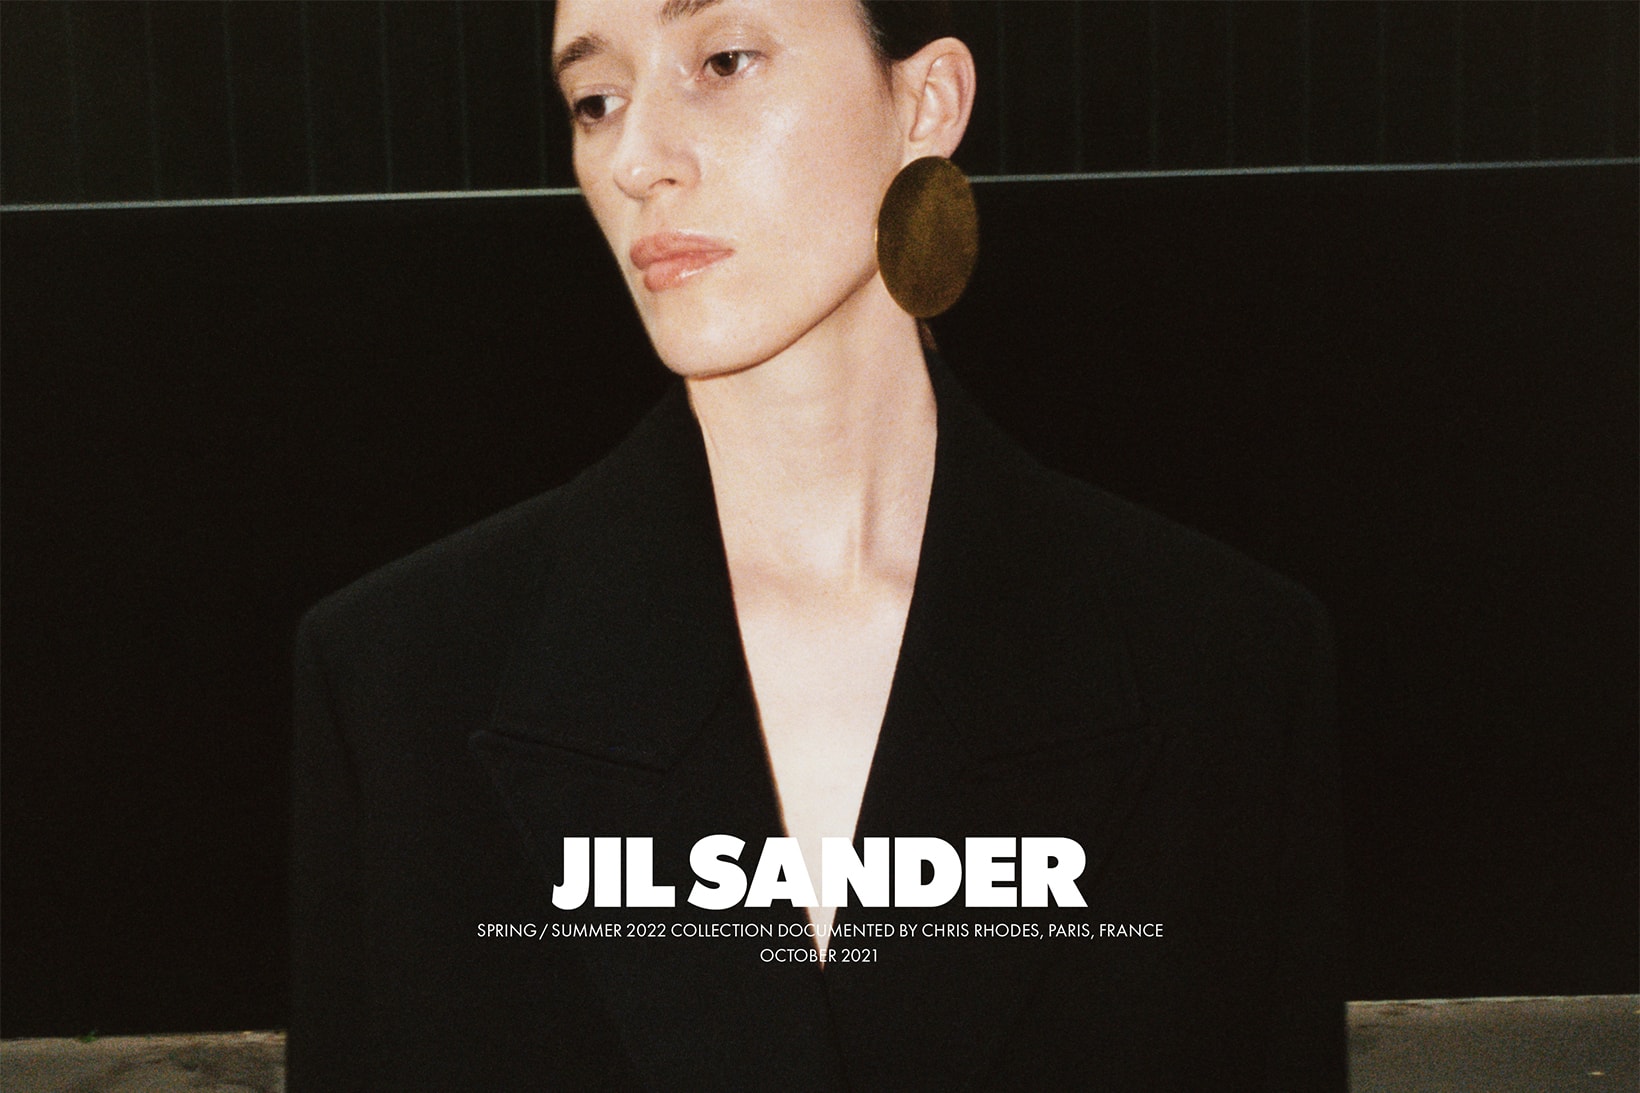 Jil Sander Spring Summer 2022 Collection